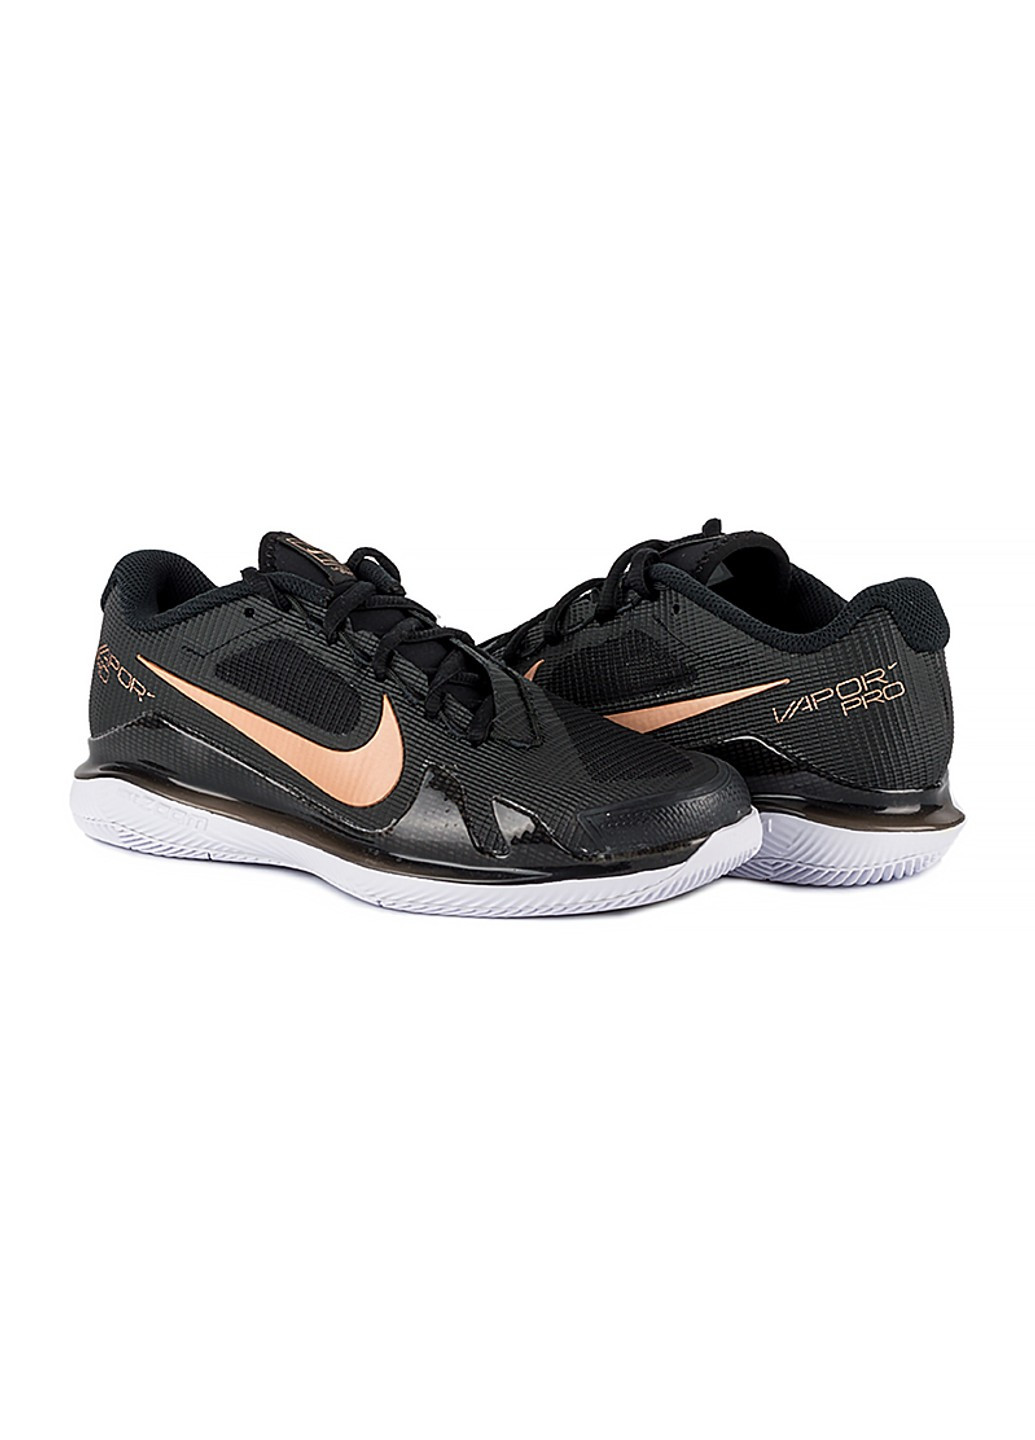 Чорні осінні кросівки zoom vapor pro hc Nike